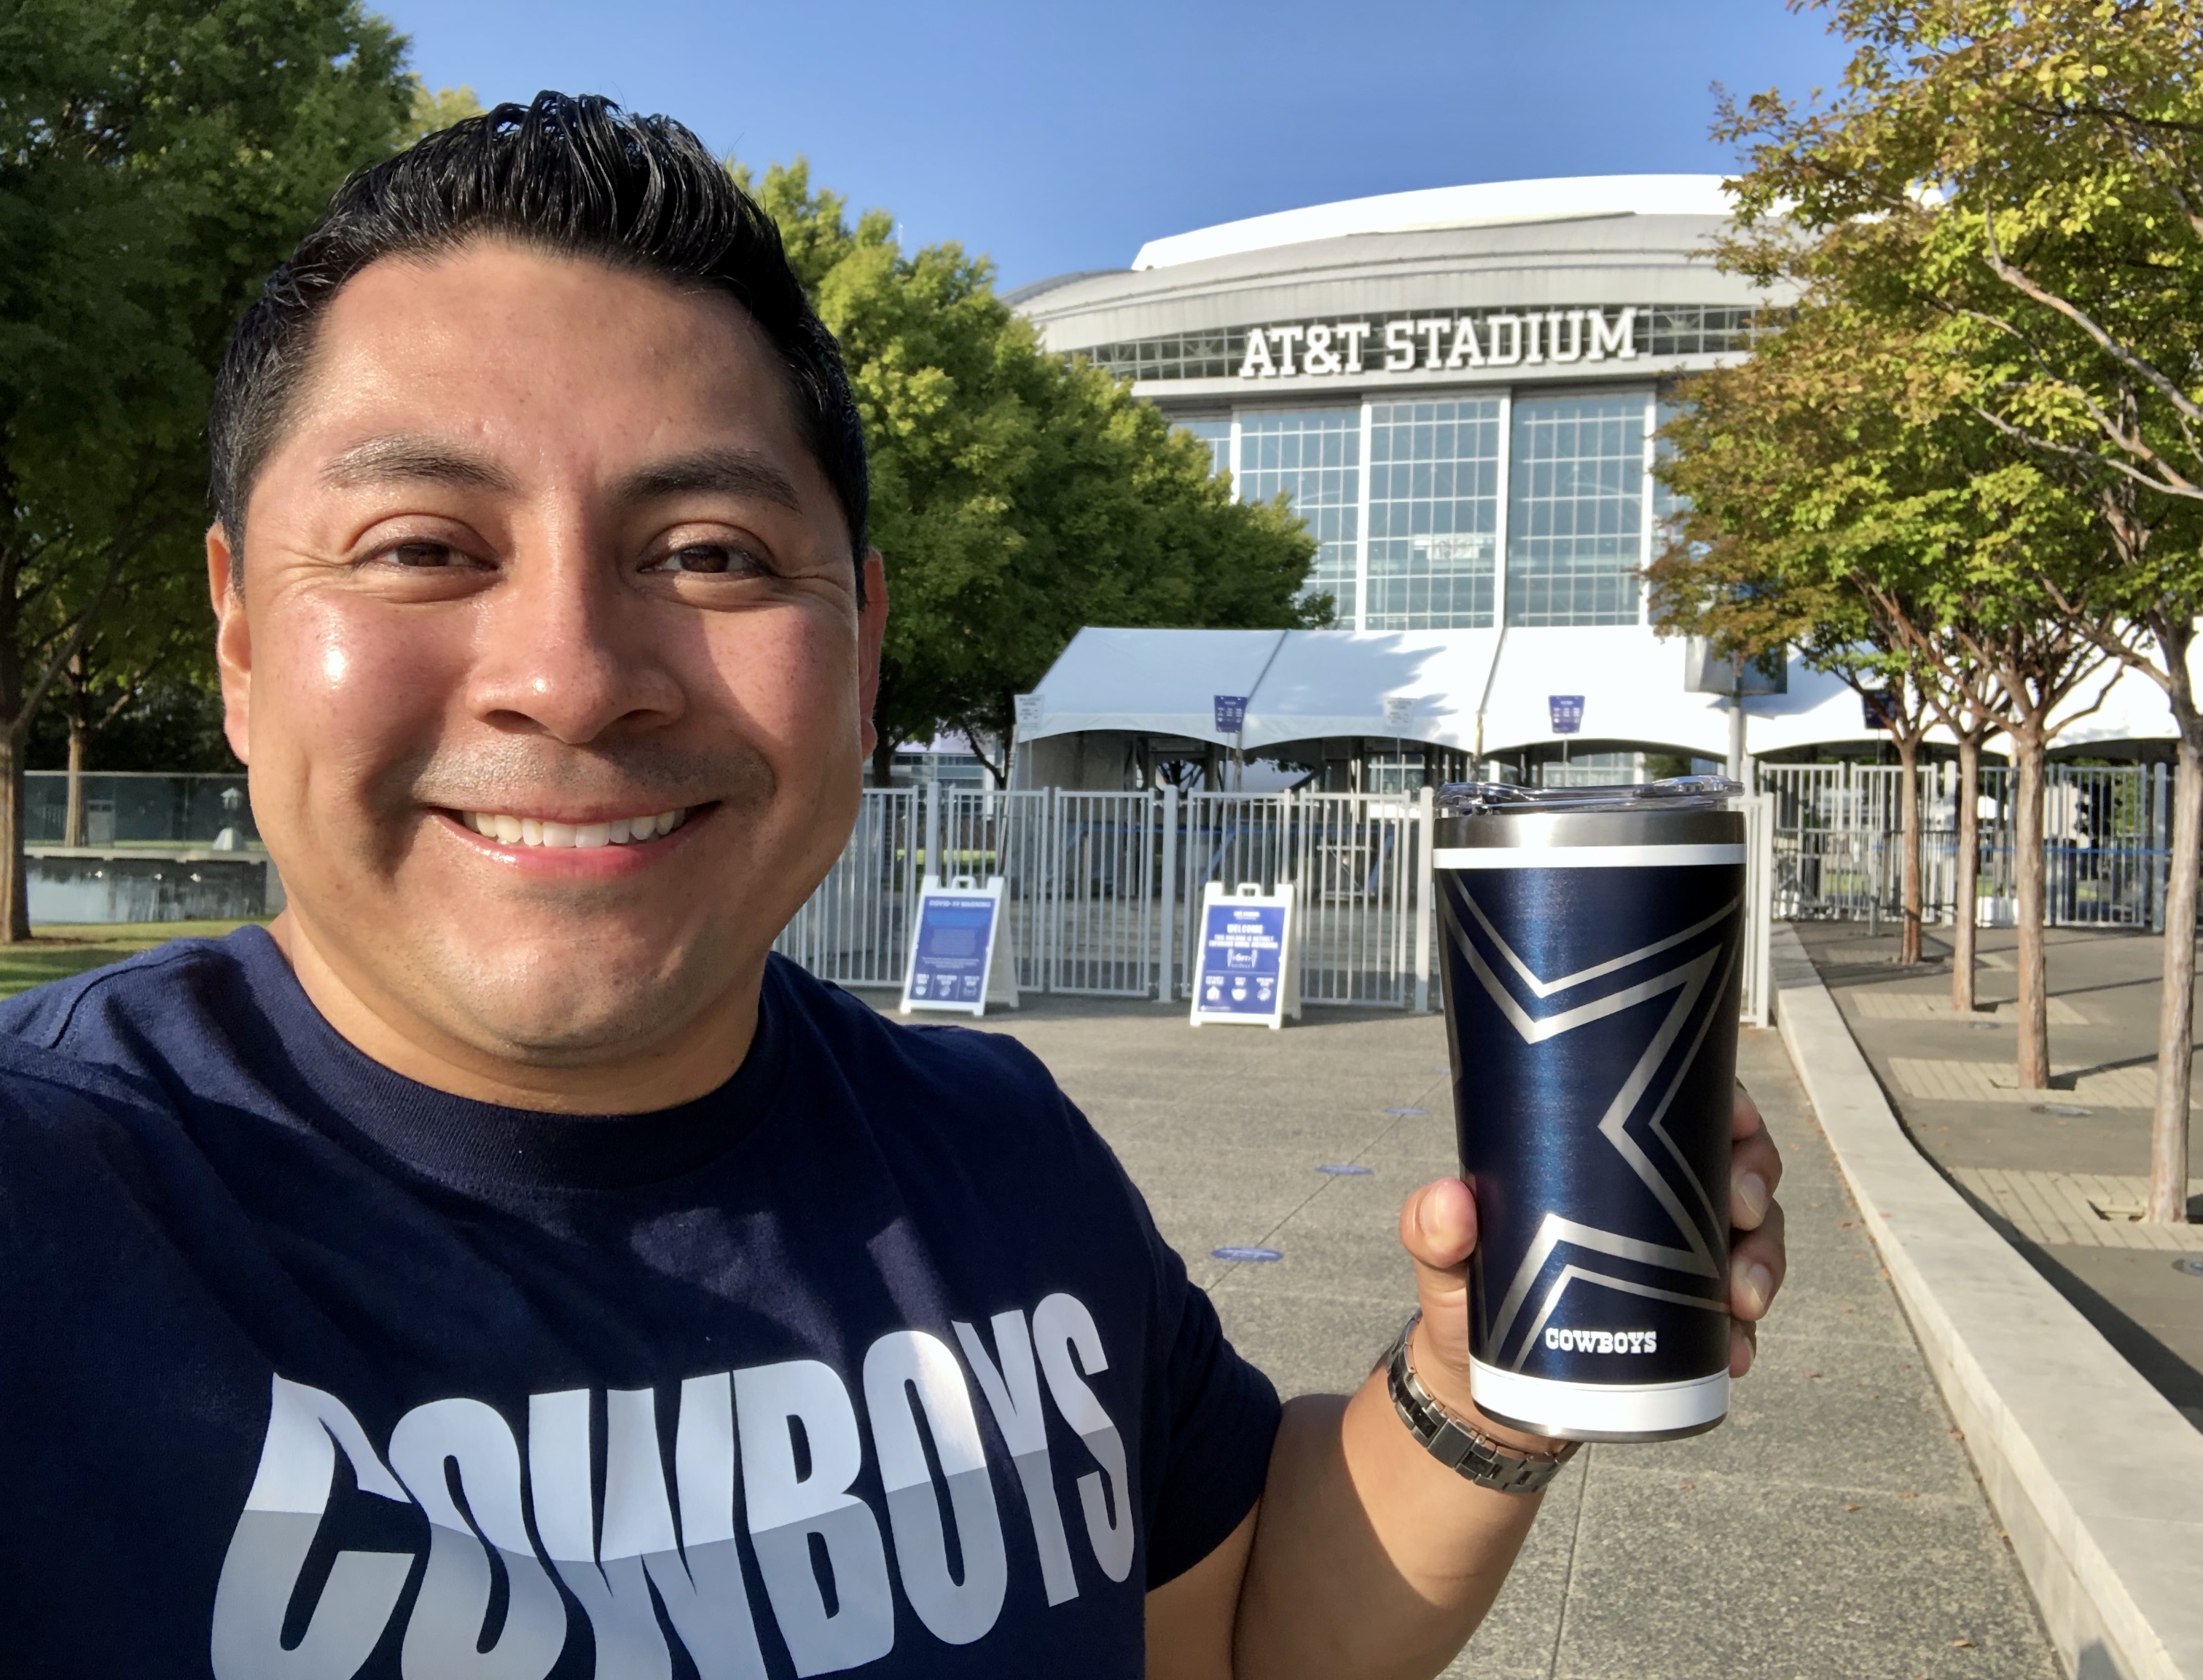 2021 Cowboys Fan Photos – NBC 5 Dallas-Fort Worth